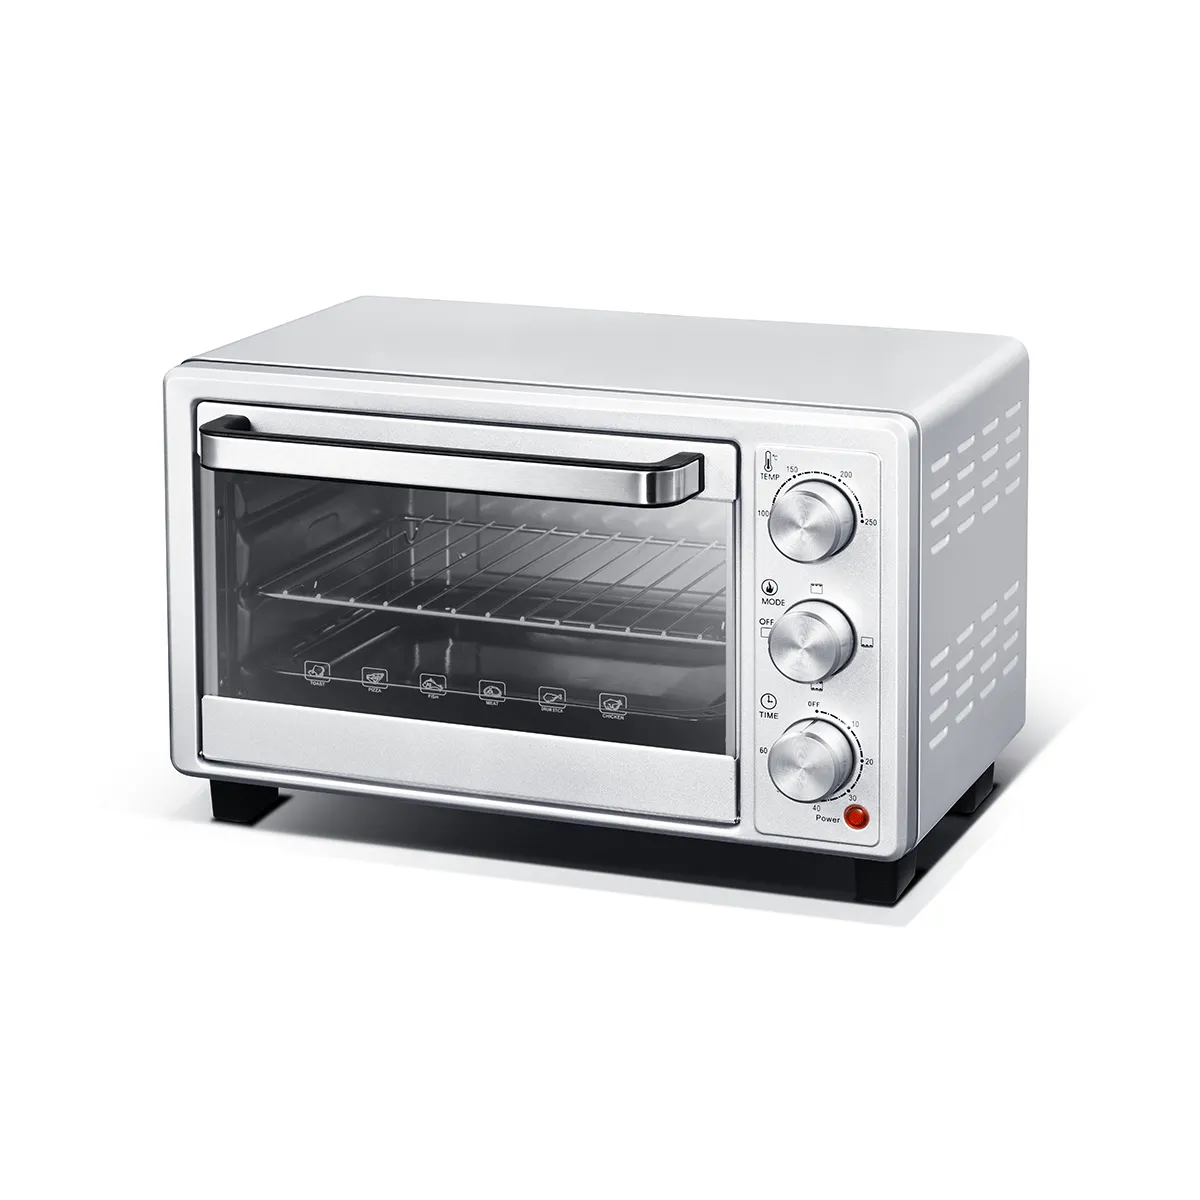 Ev 16L 4 dilim tost makinesi fırın, taşınabilir elektrikli Pizza fırını, paslanmaz çelik ısıtma elemanı fırın mutfak aletleri.